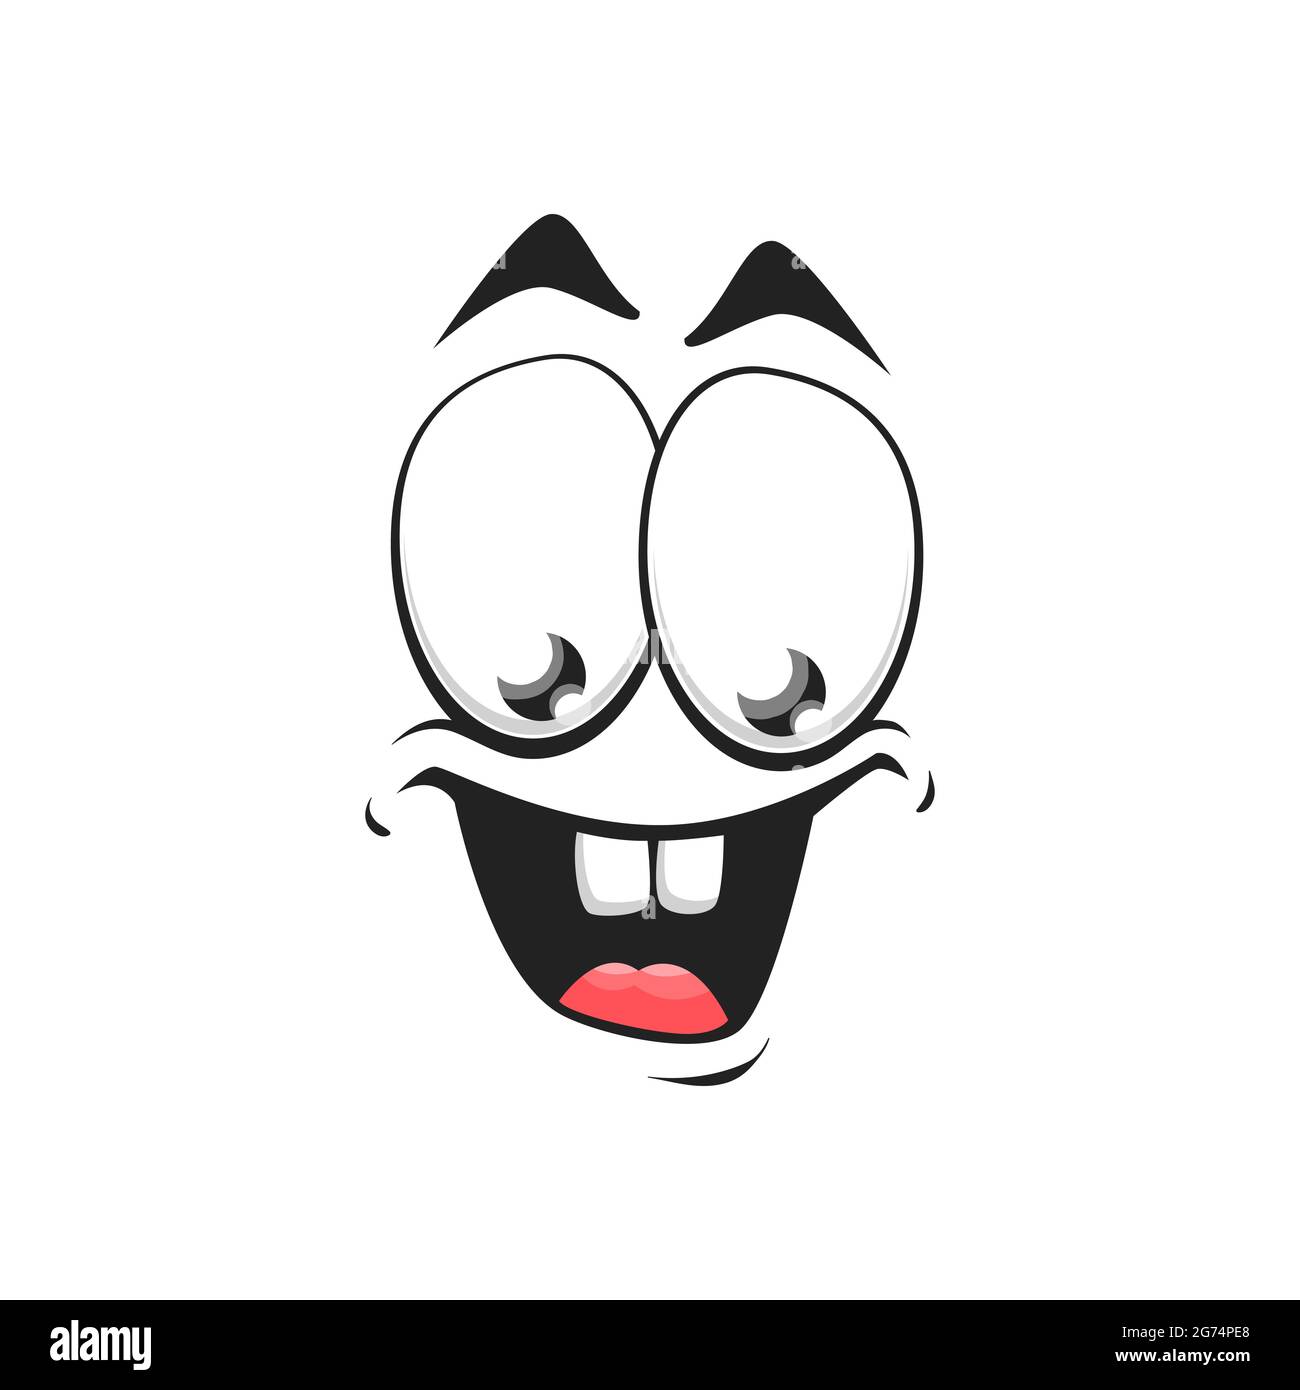 Cartoon Gesicht isoliert Vektor-Symbol, weit erfreut Lächeln Gesichts Emoji von lustig dumm Kreatur, glückliche Emotion, Comic-Gesicht mit toothy lächelnd Mund und Stock Vektor